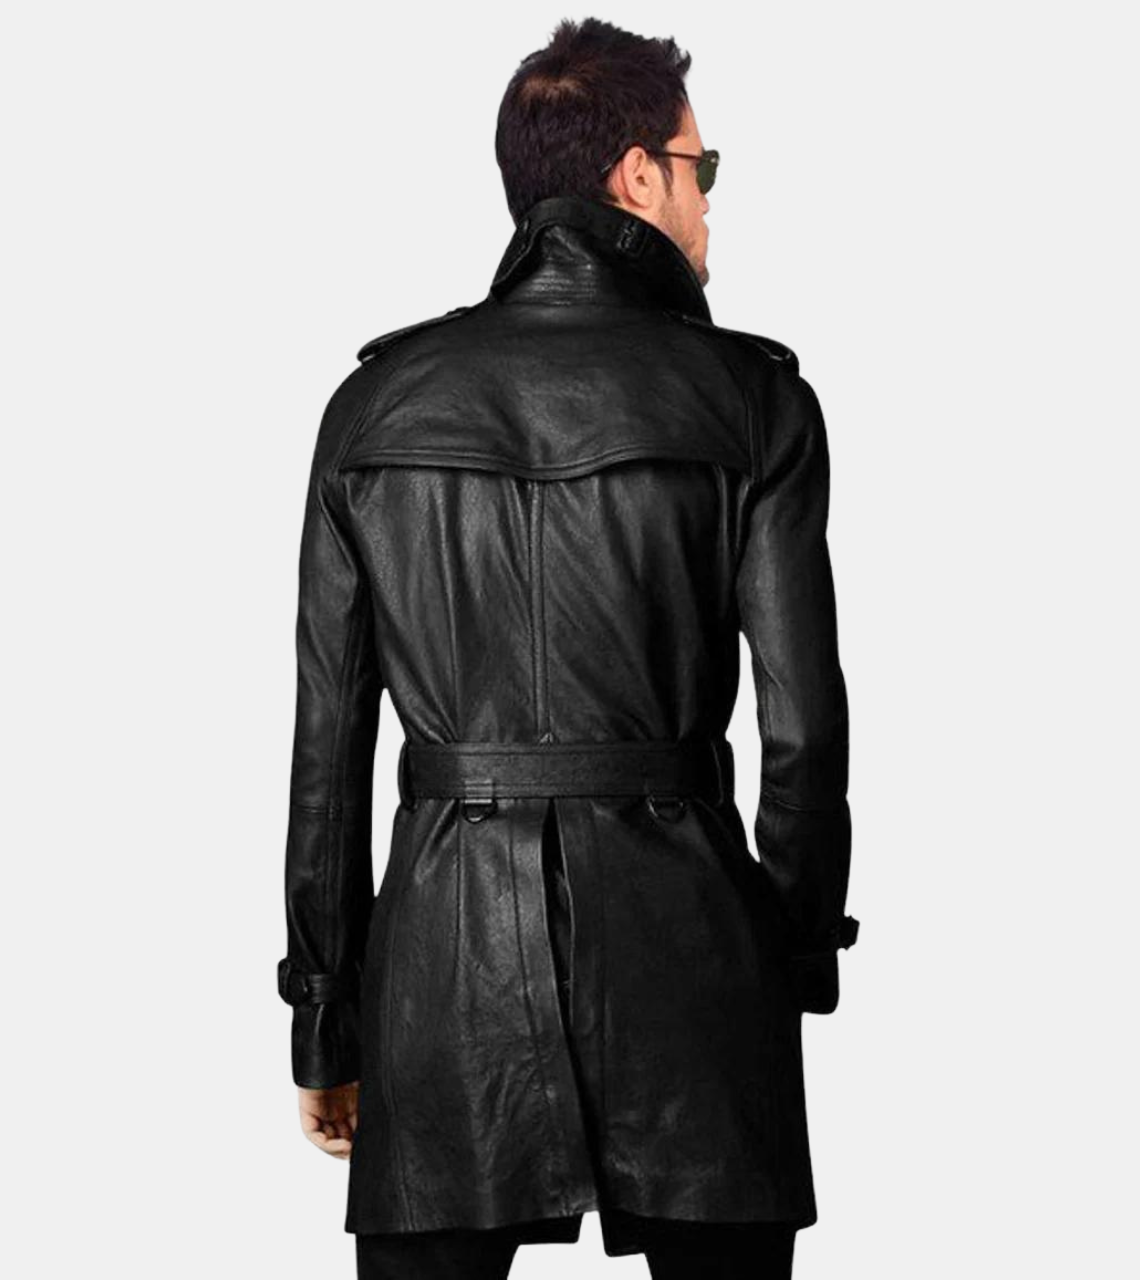 Vintage Style Long Men's Leather Coat